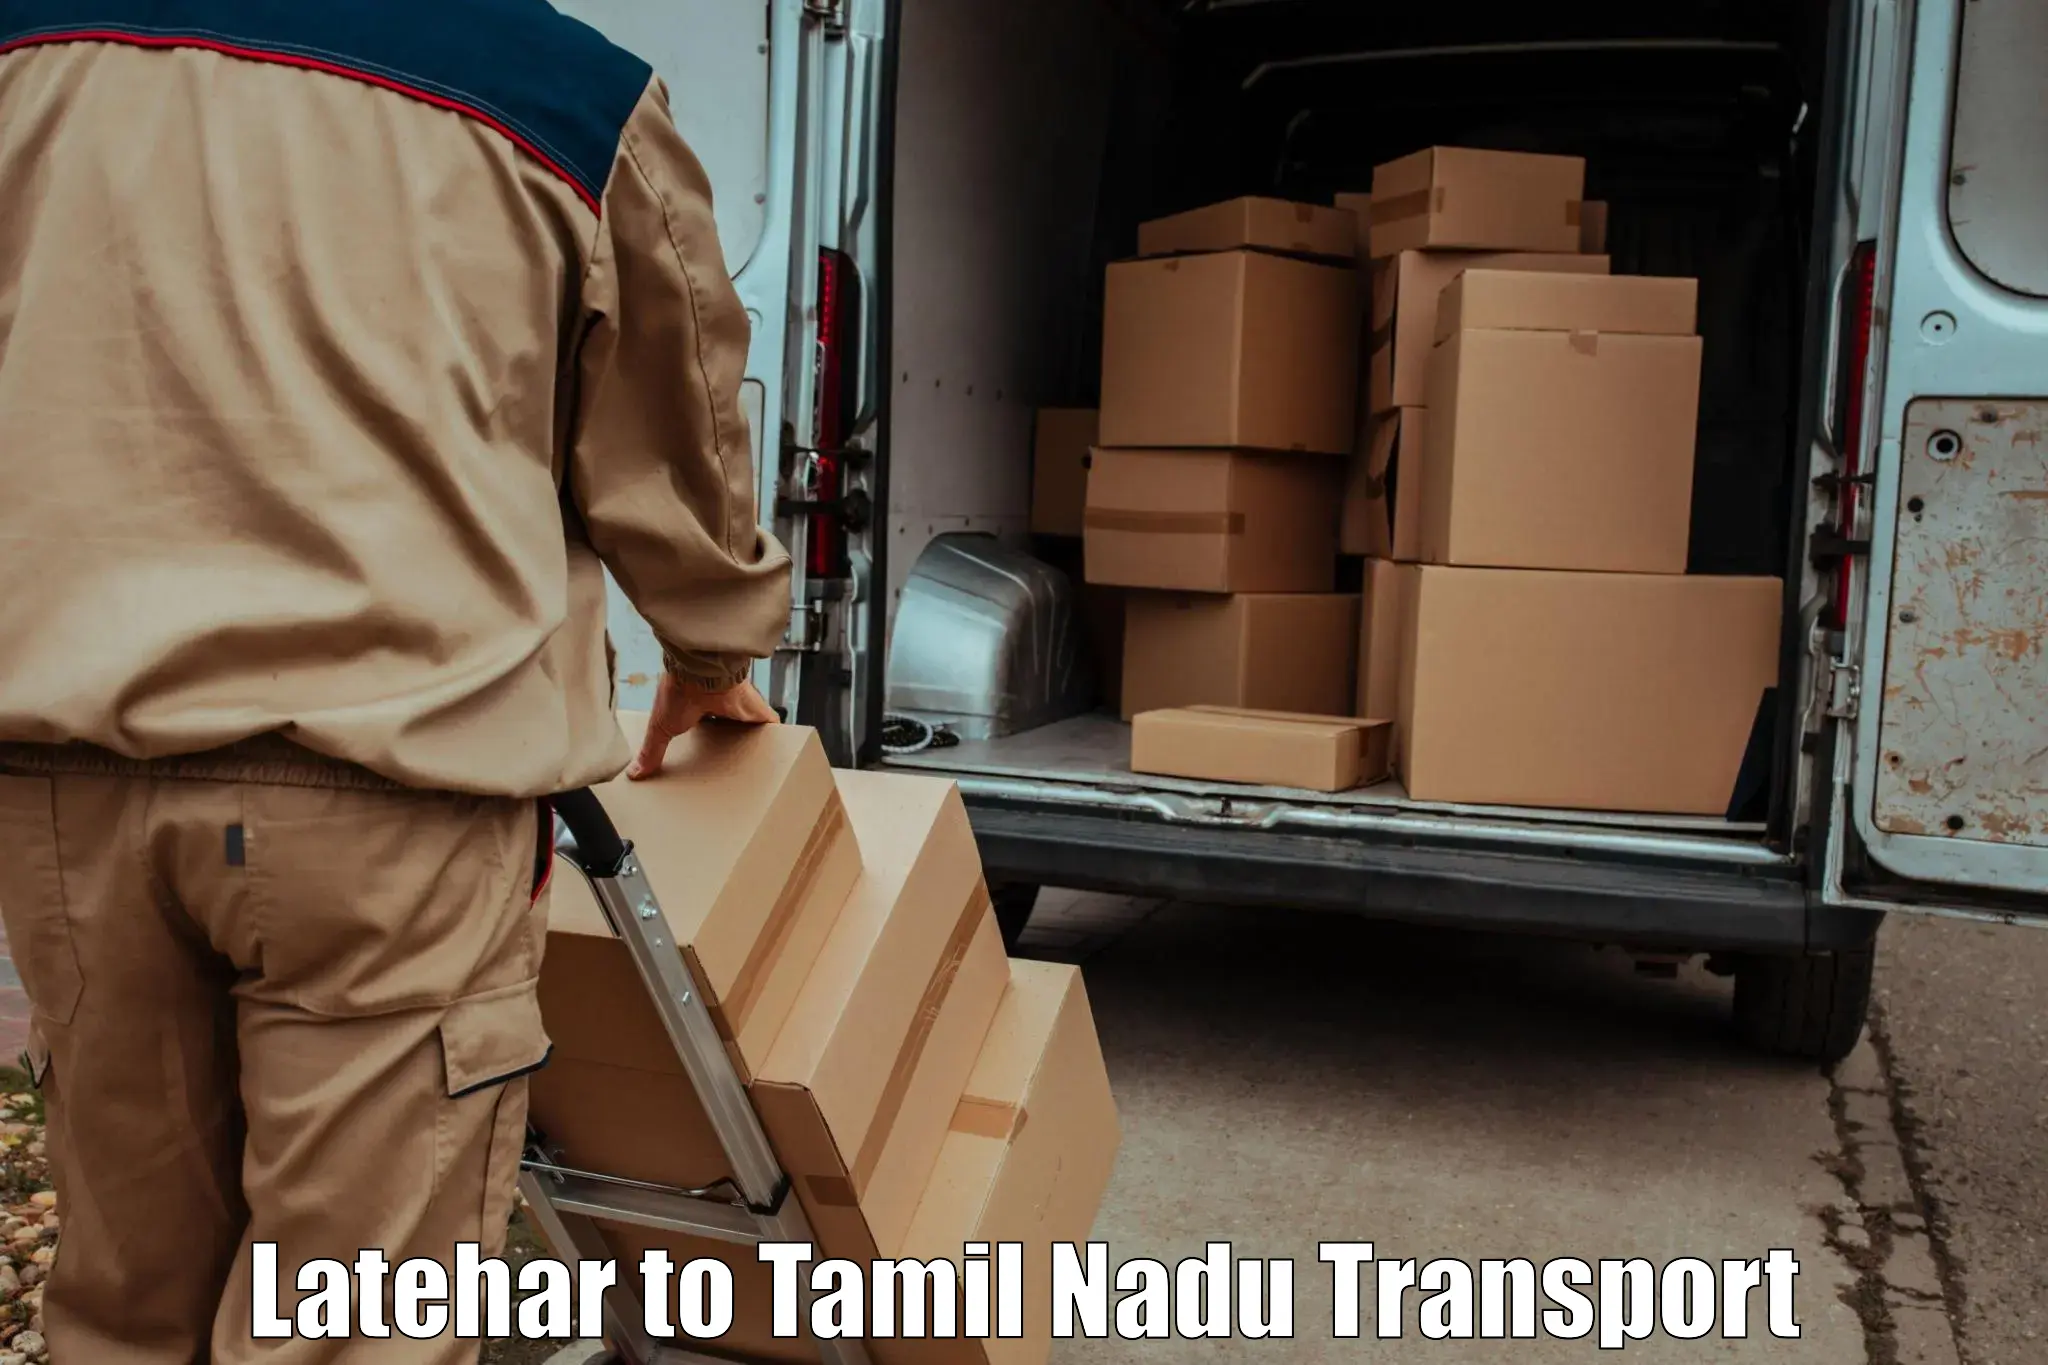 Transport shared services Latehar to Tirunelveli